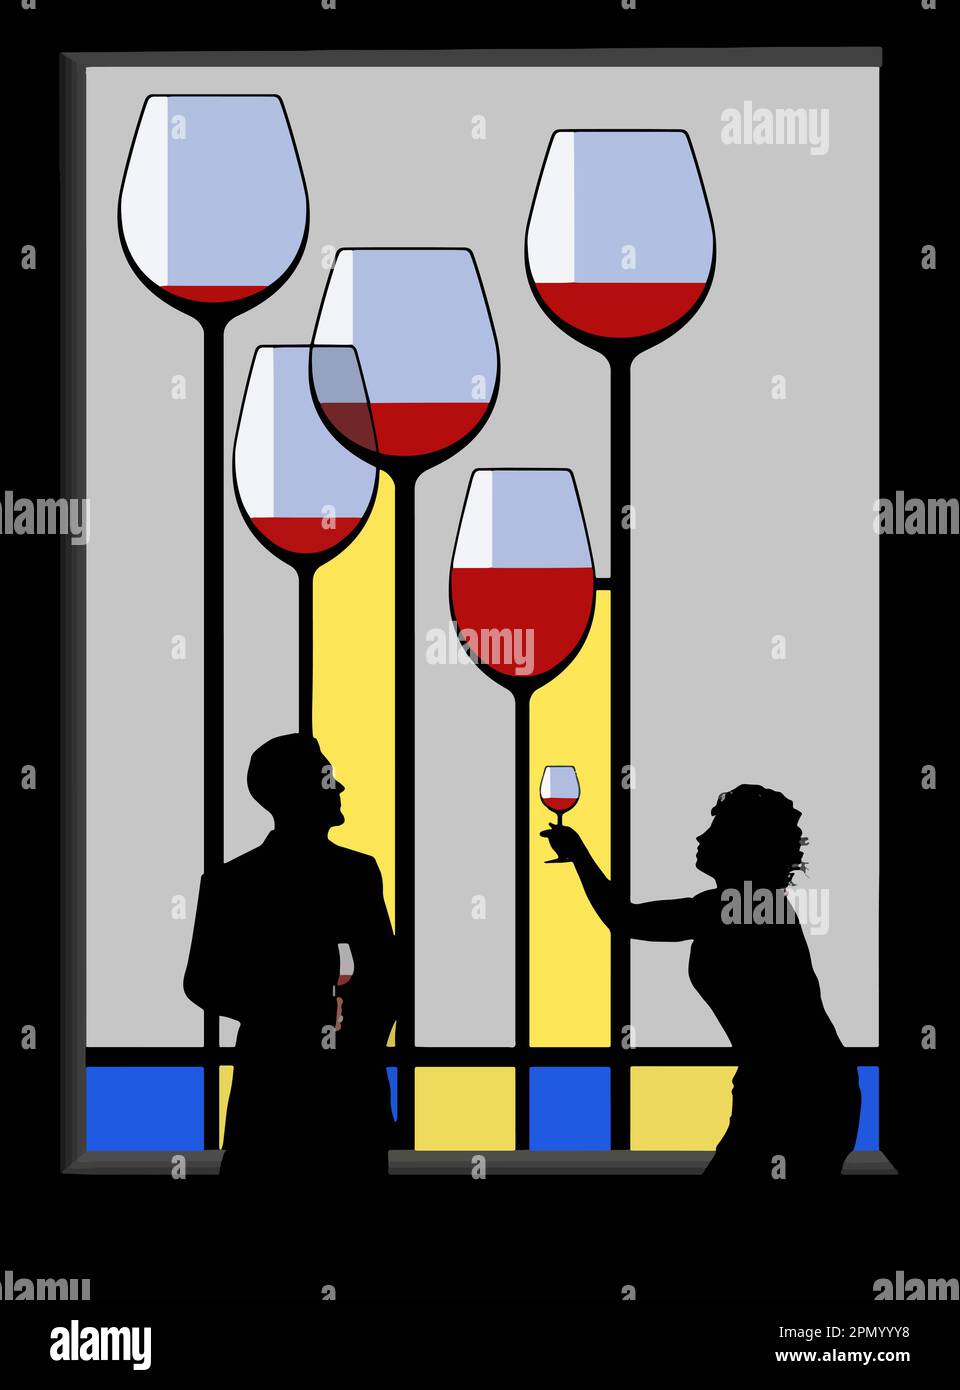 Un homme et une femme interagissent alors qu'ils boivent du vin devant un vitrail de verre de lunettes et de couleur dans cette illustration vectorielle. Illustration de Vecteur